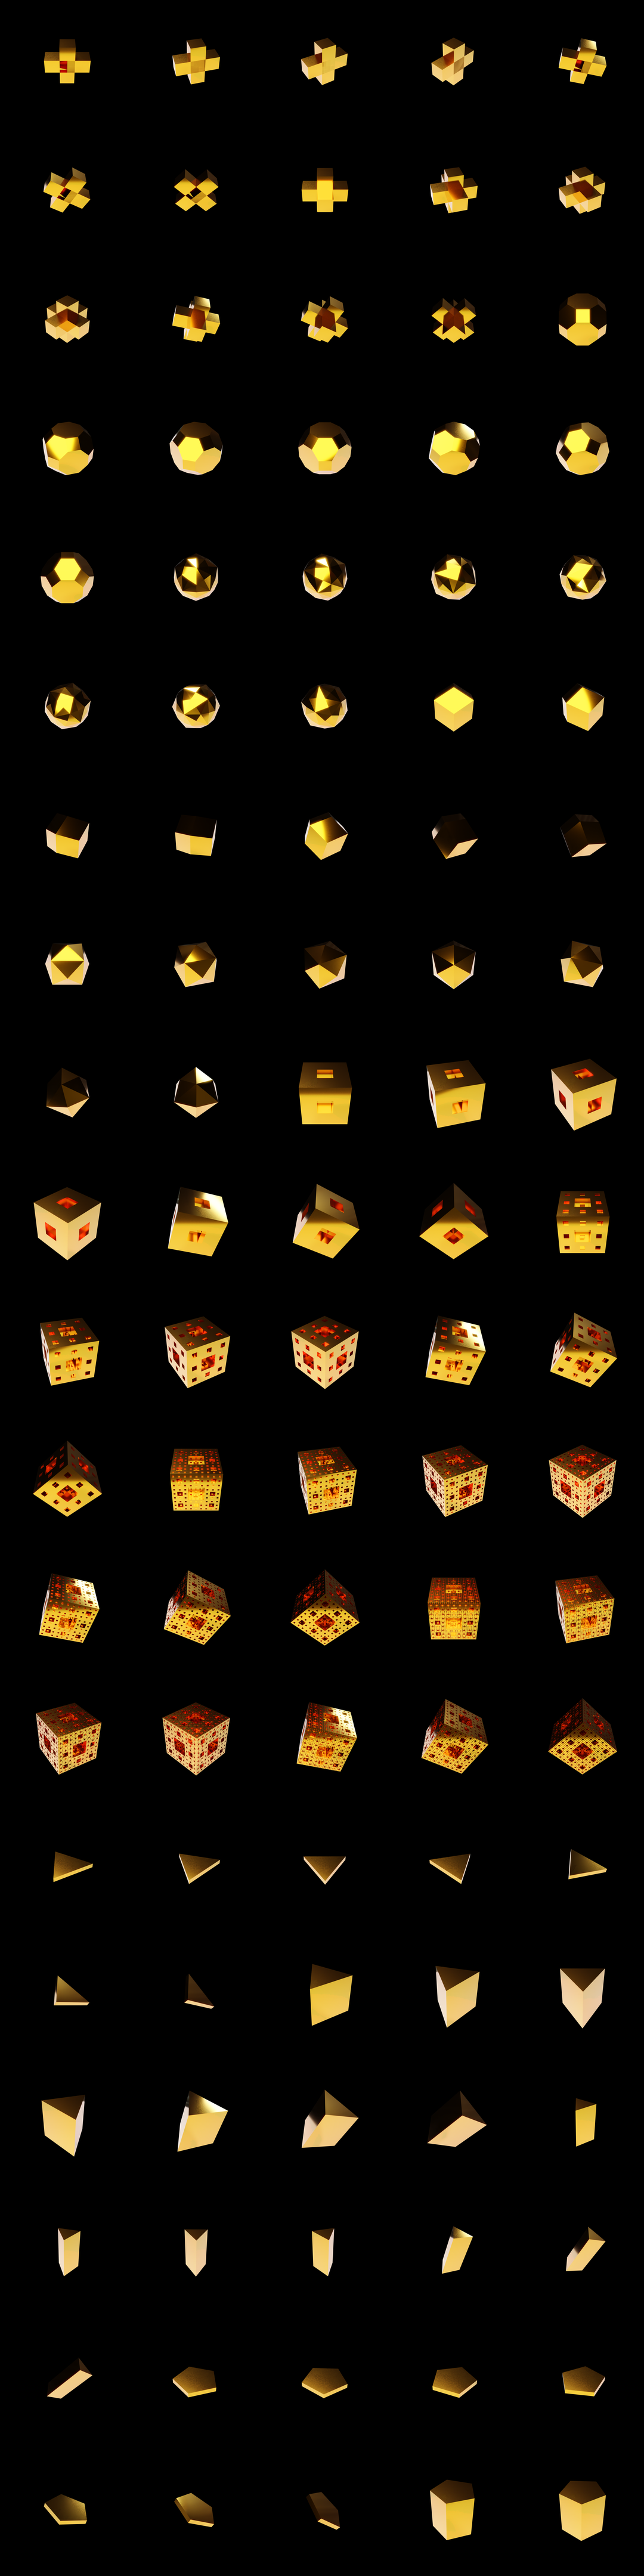 The Bundle - m.gold/b tile image 2